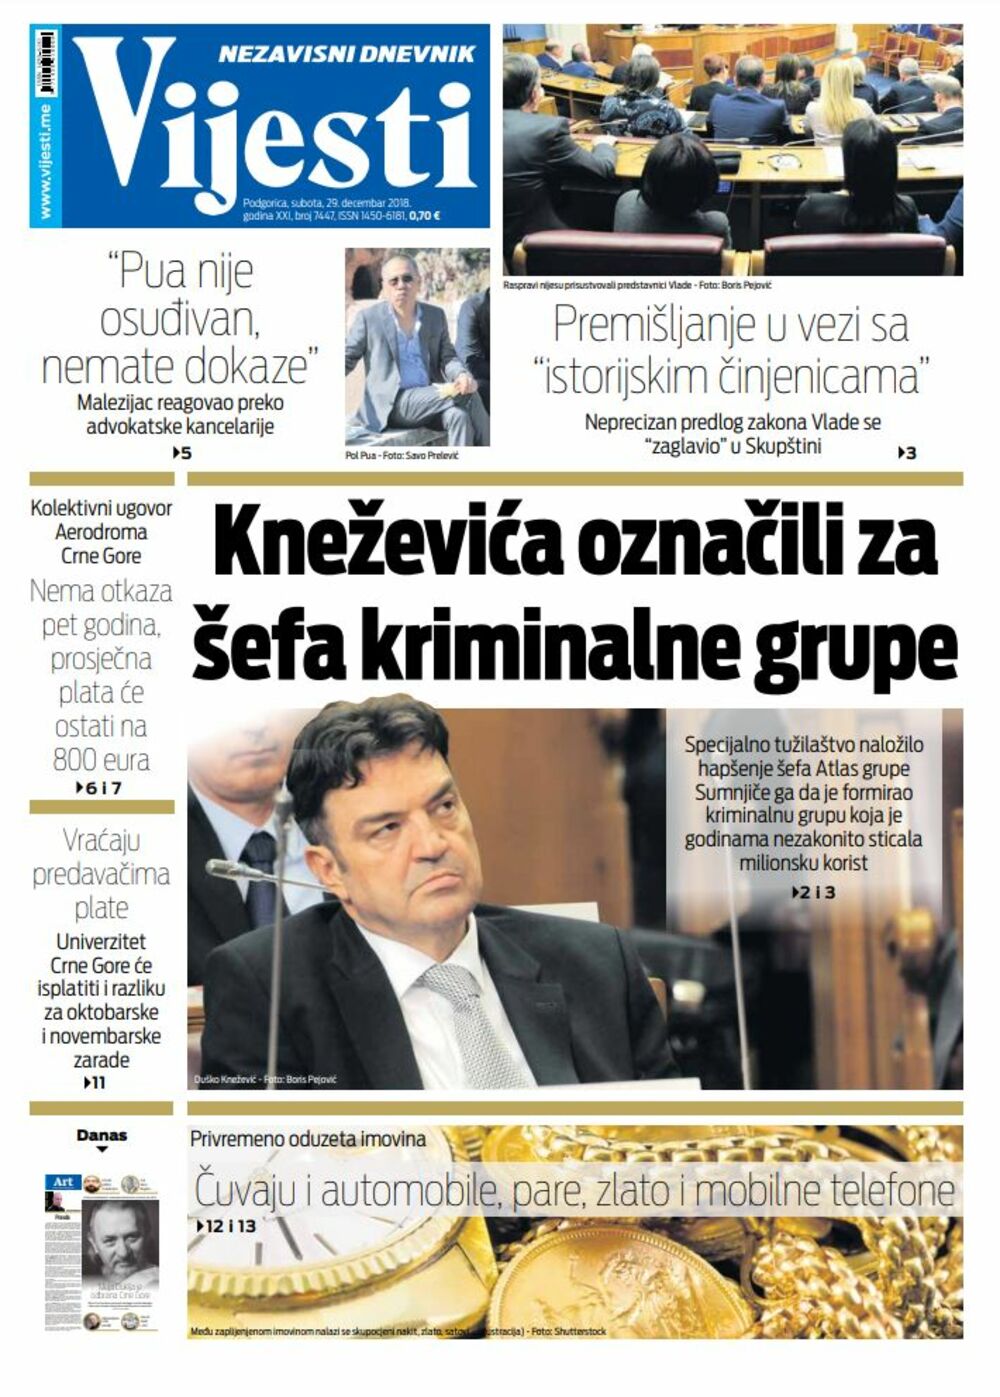 Naslovna strana "Vijesti" za 29. decembar